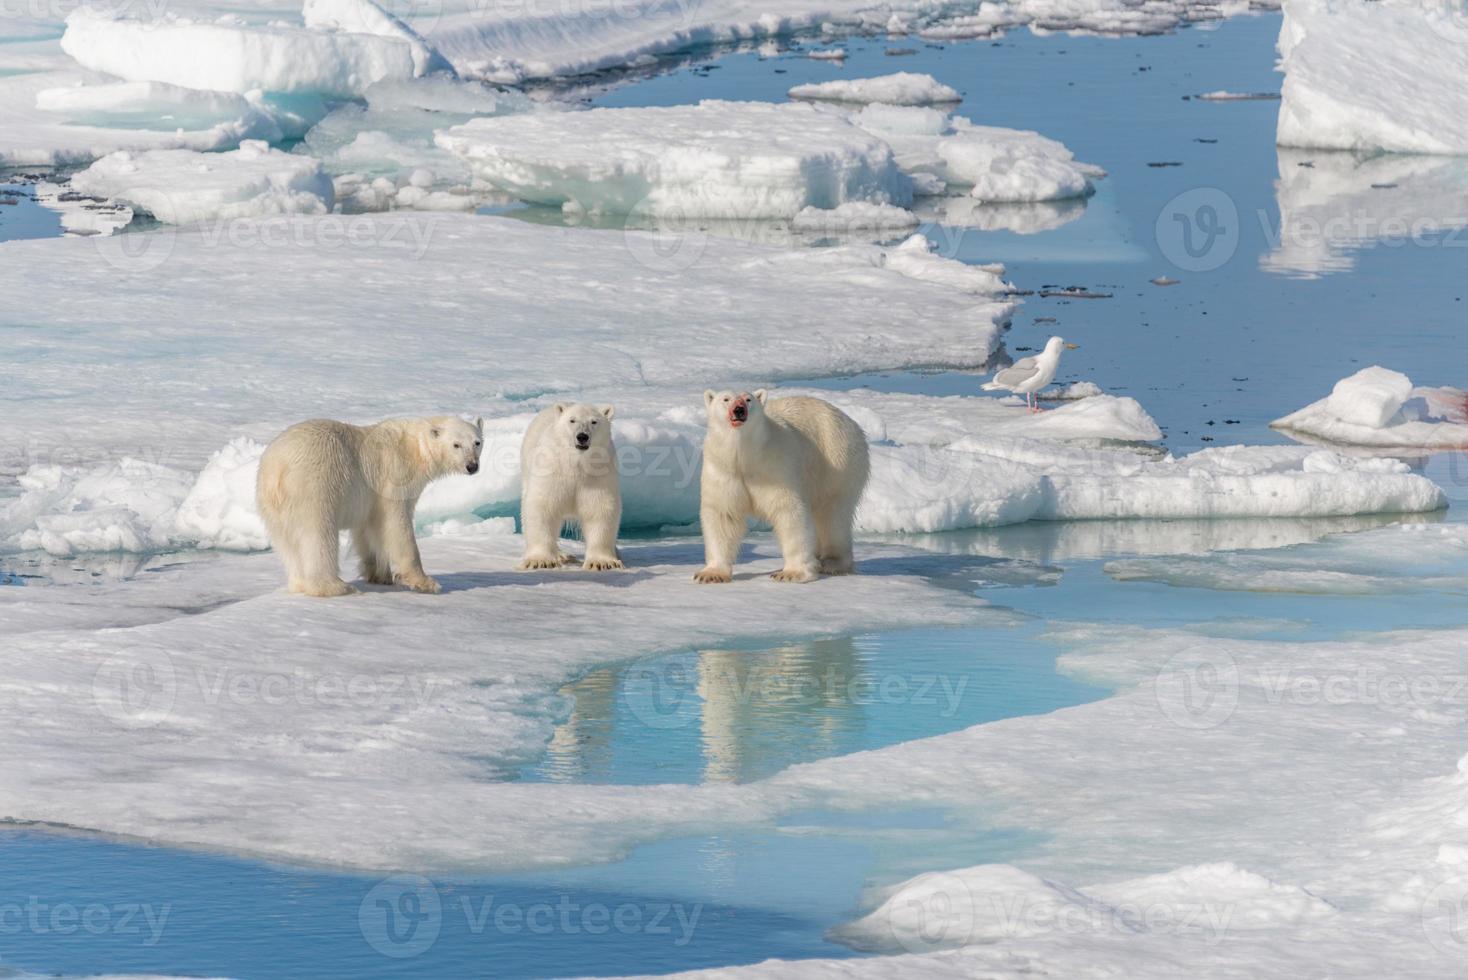 urso polar selvagem mãe e dois filhotes no gelo, ao norte de svalbard ártico noruega foto